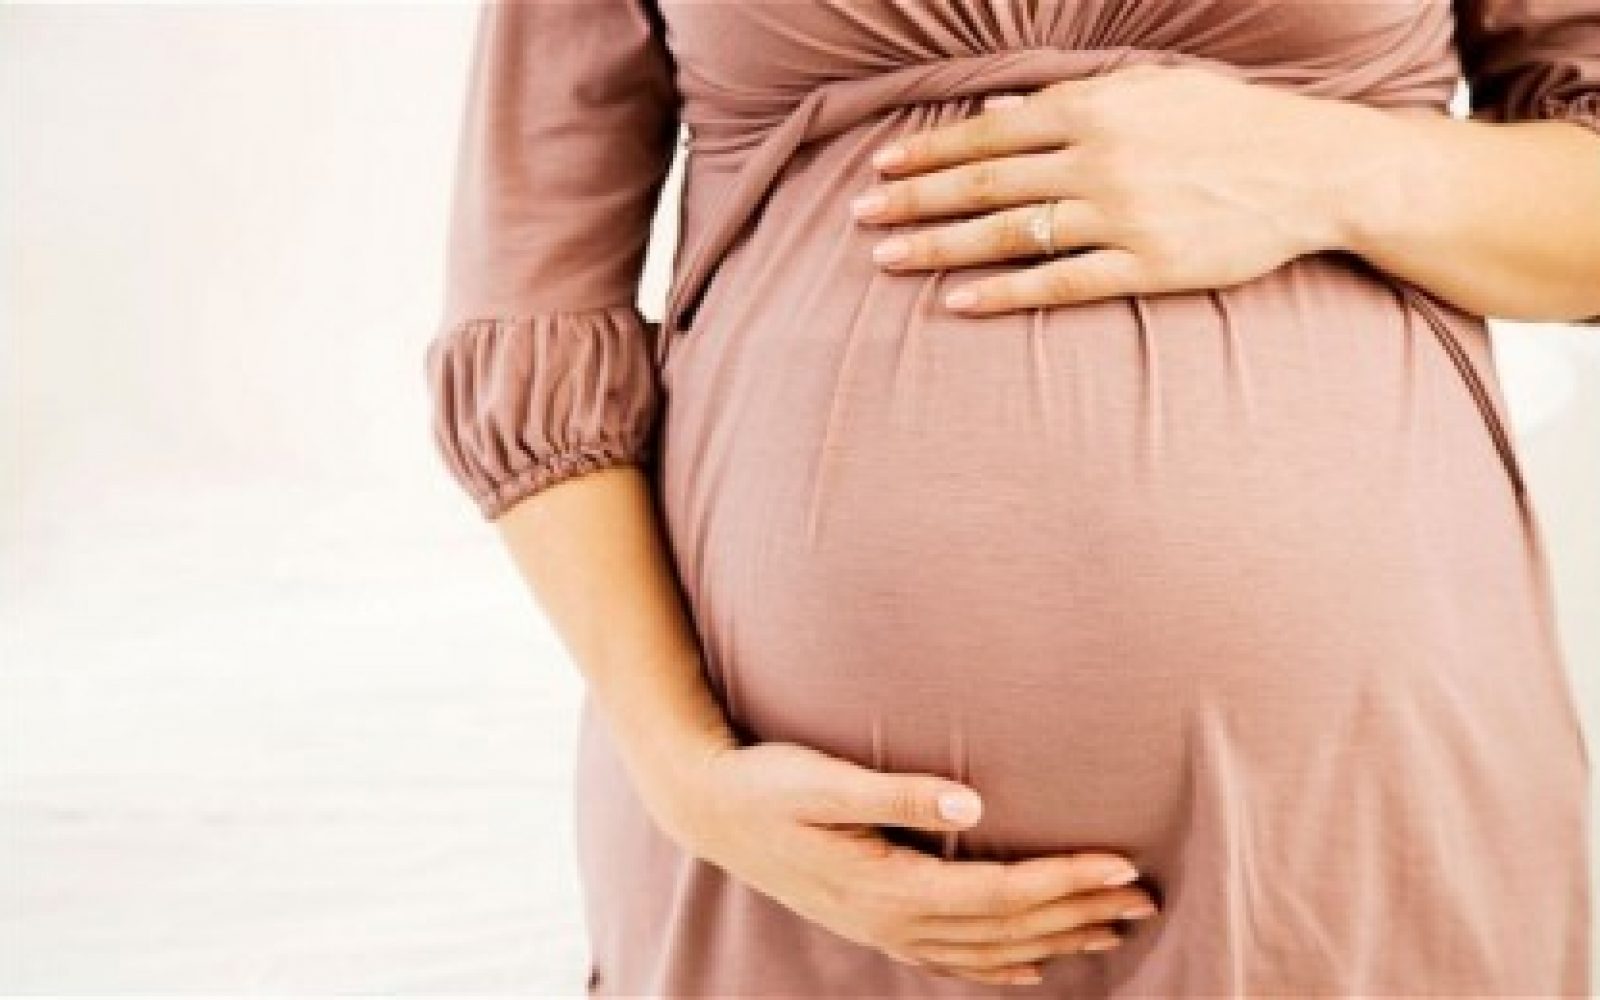  حلم الحامل للعزباء - اسرار تفسير الاحلام